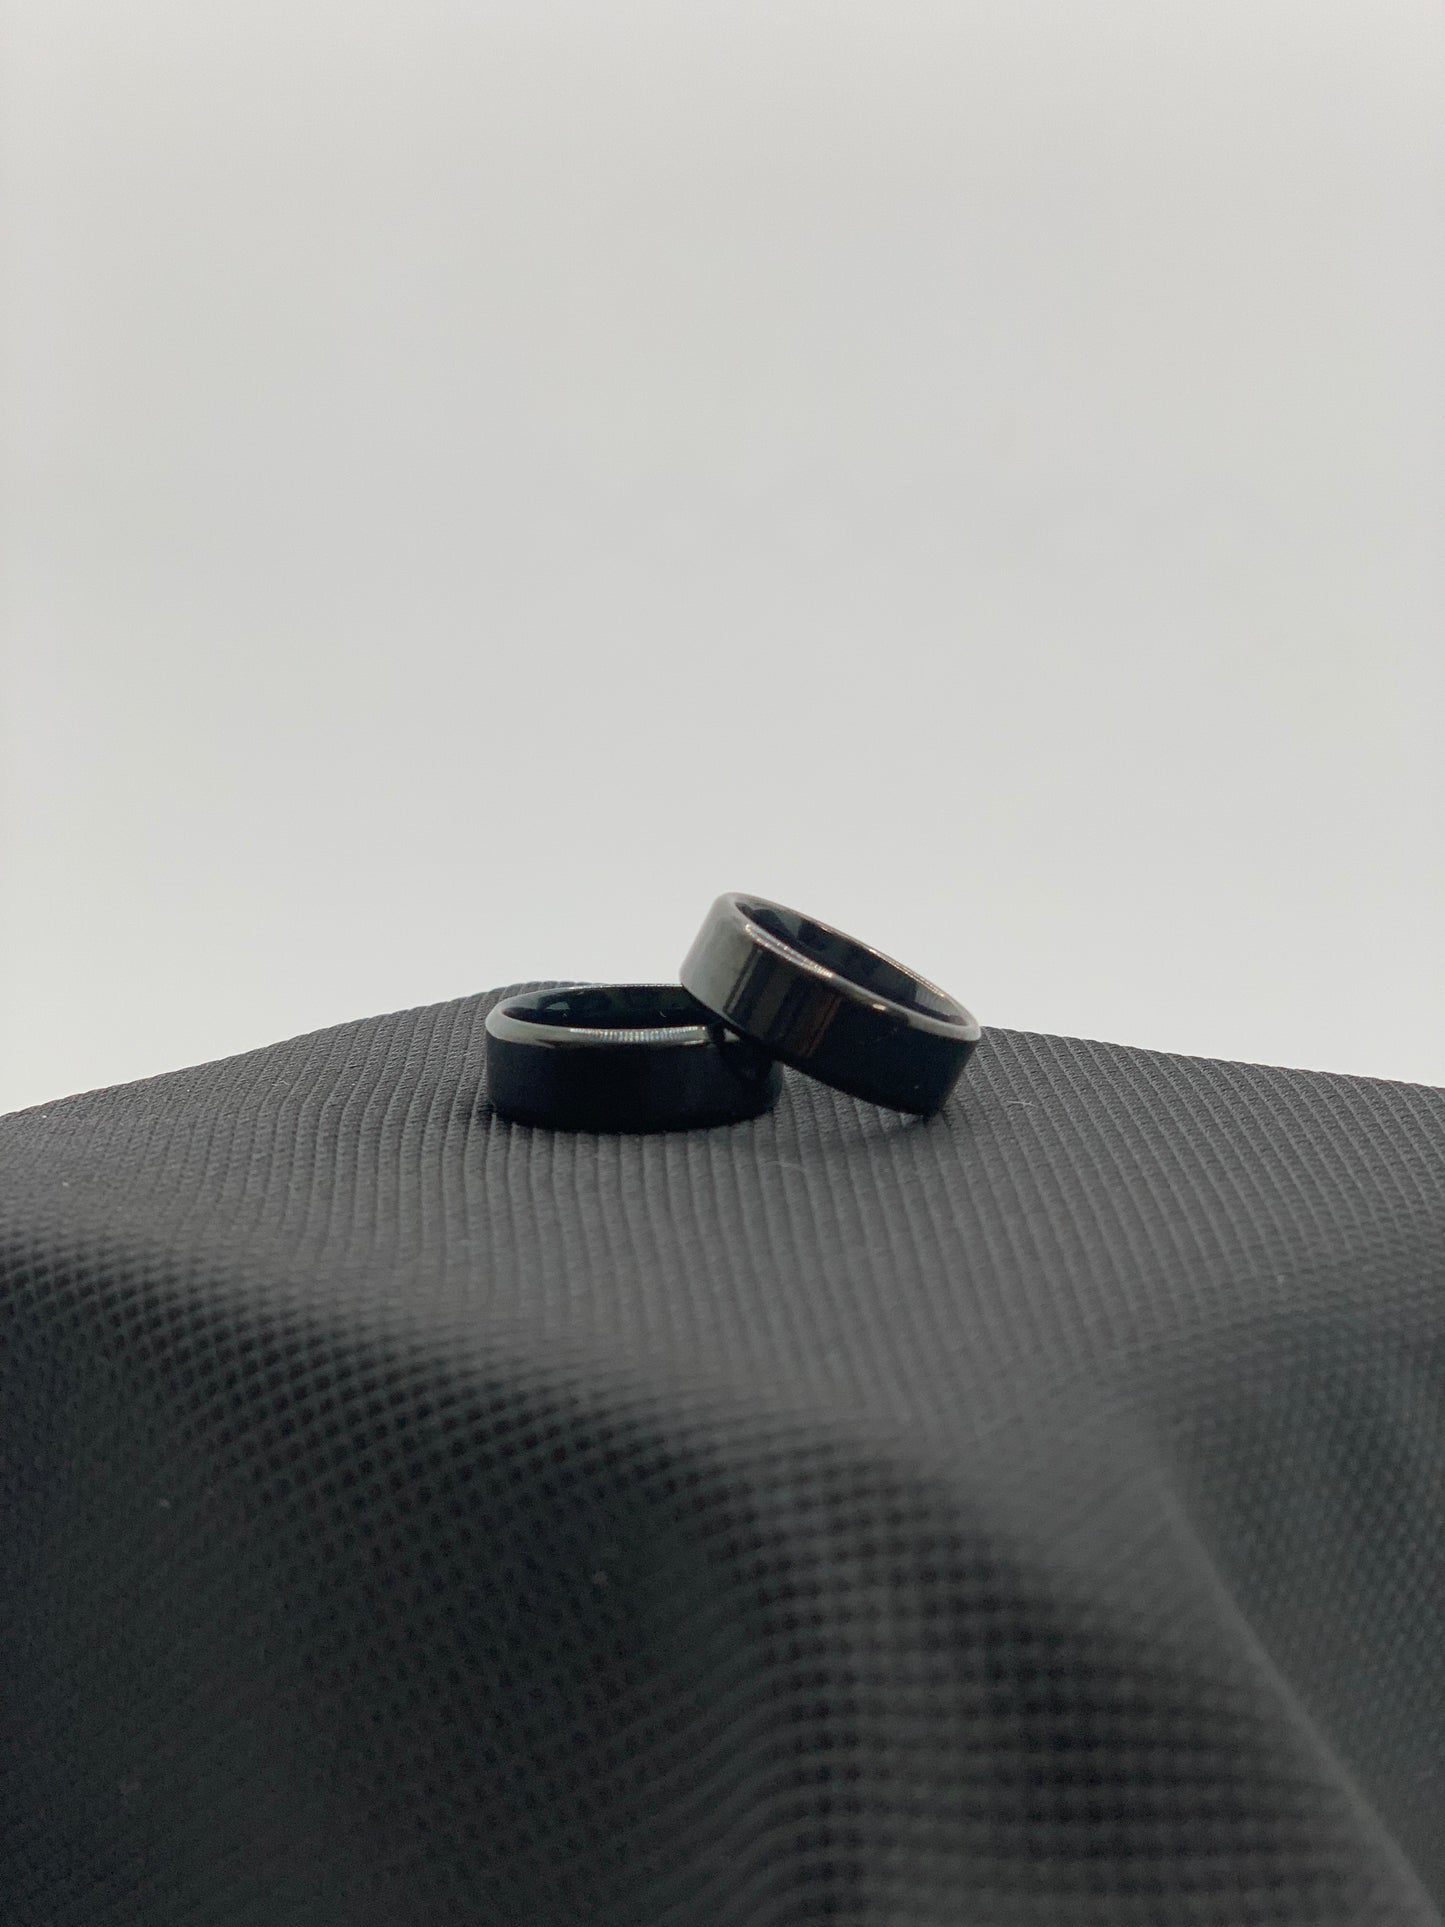 Dark Sleek Ring